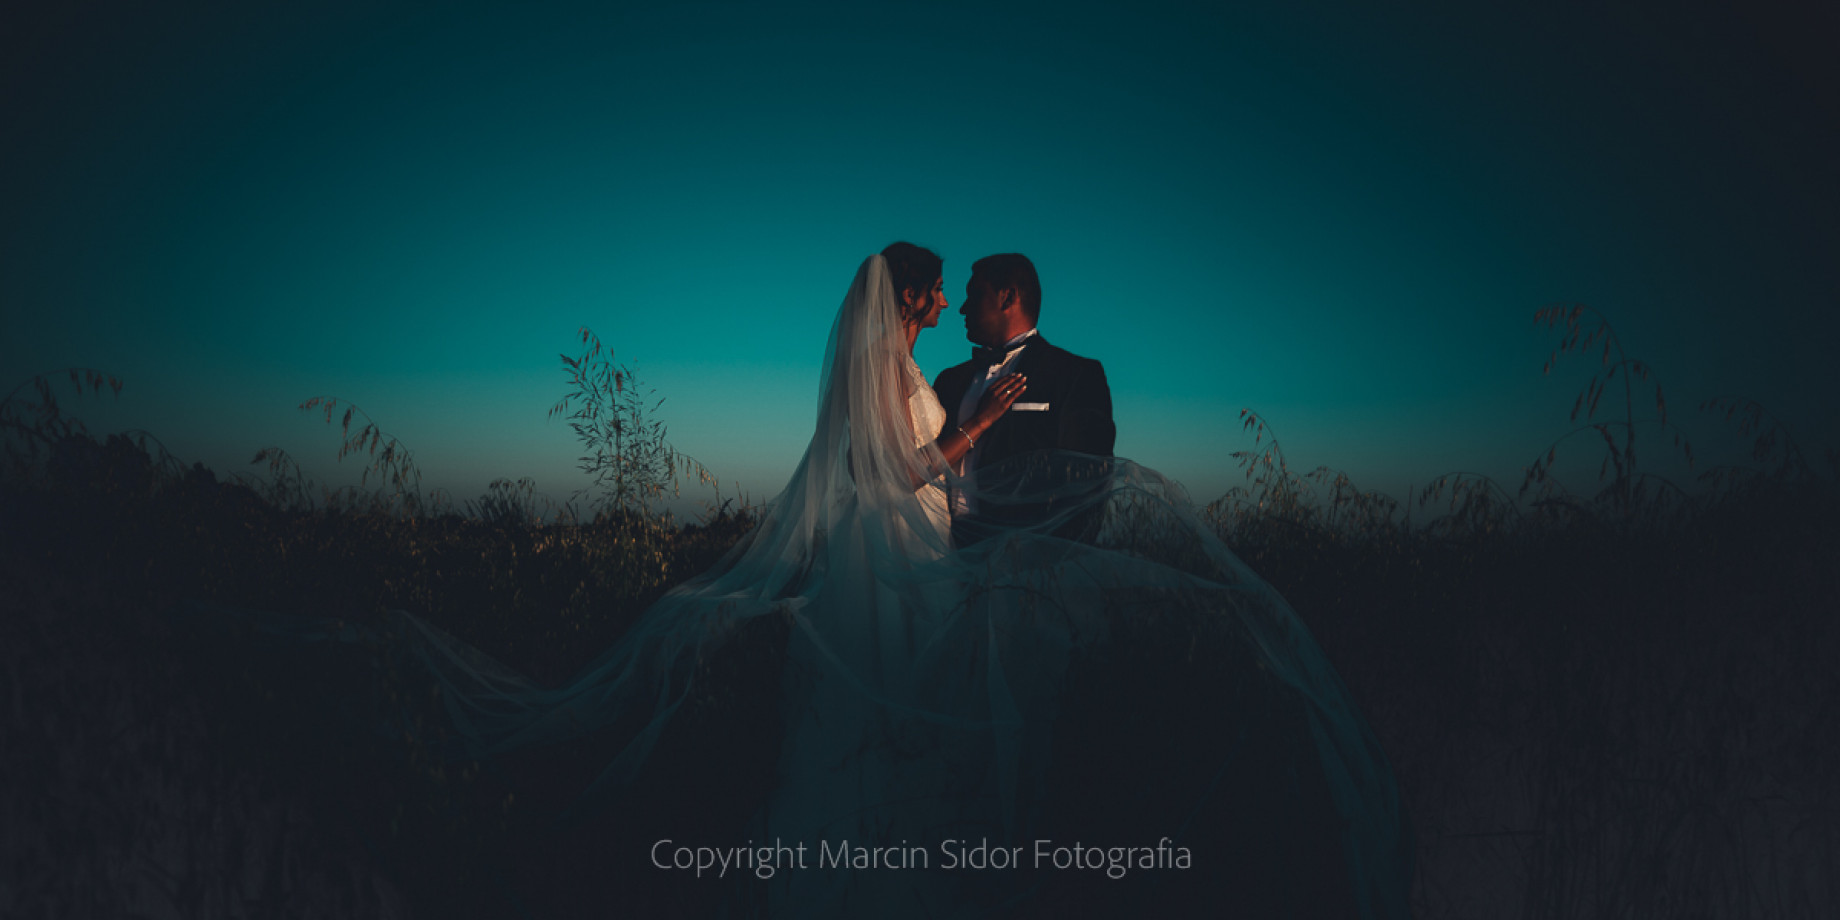 fotograf rzeszow marcin-sidor portfolio zdjecia slubne inspiracje wesele plener slubny sesja slubna